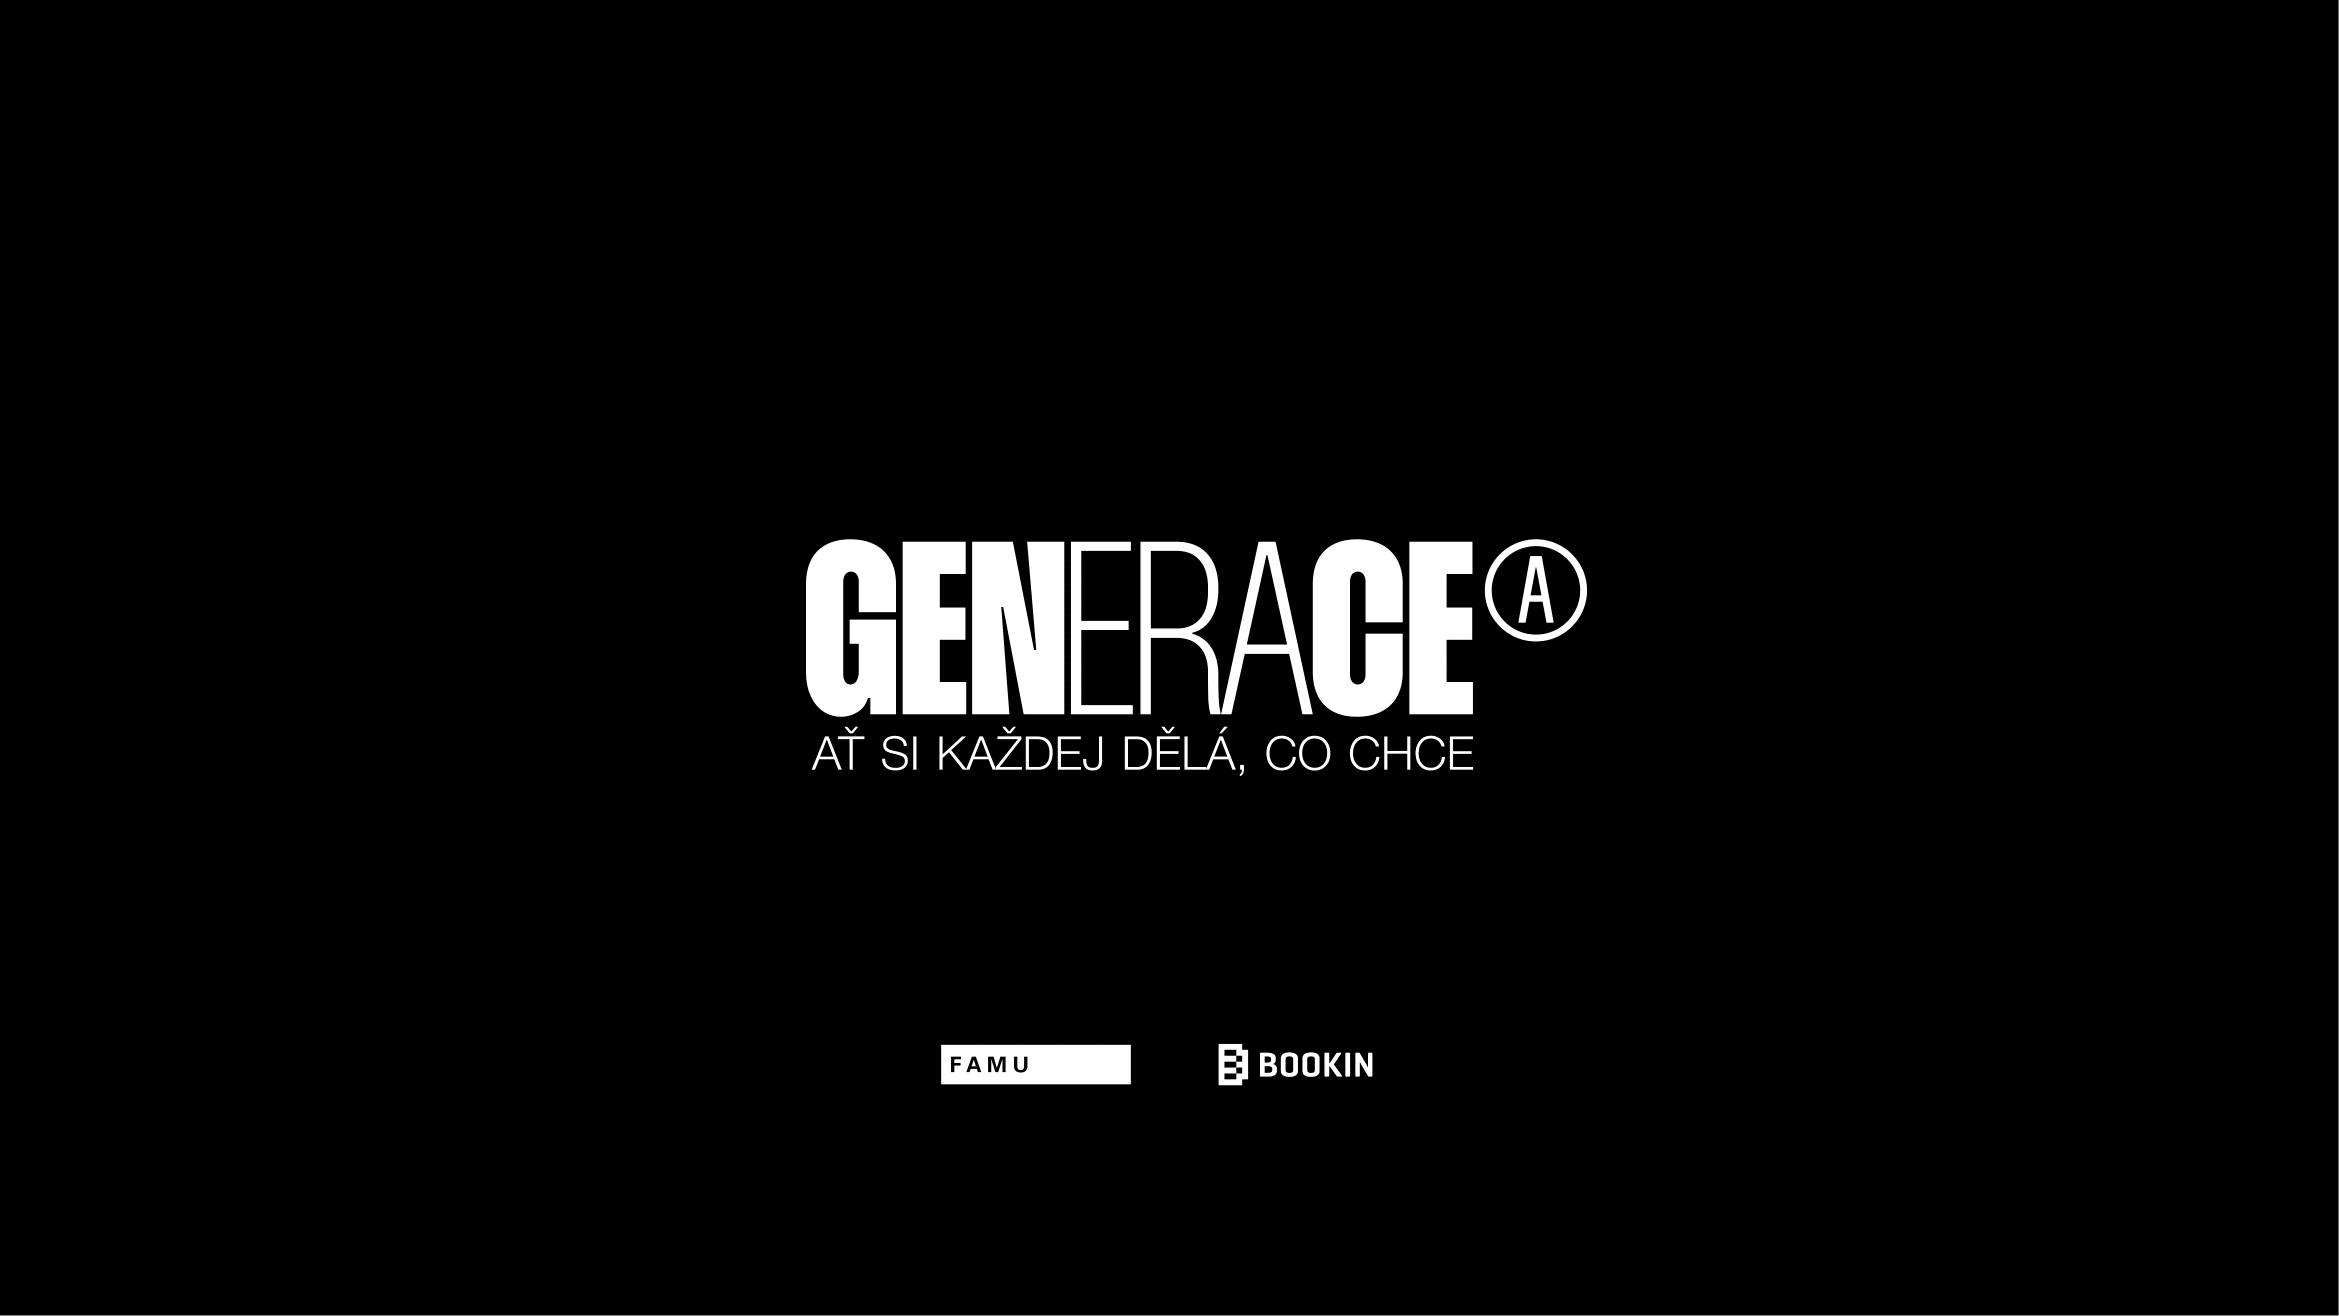 Generace A